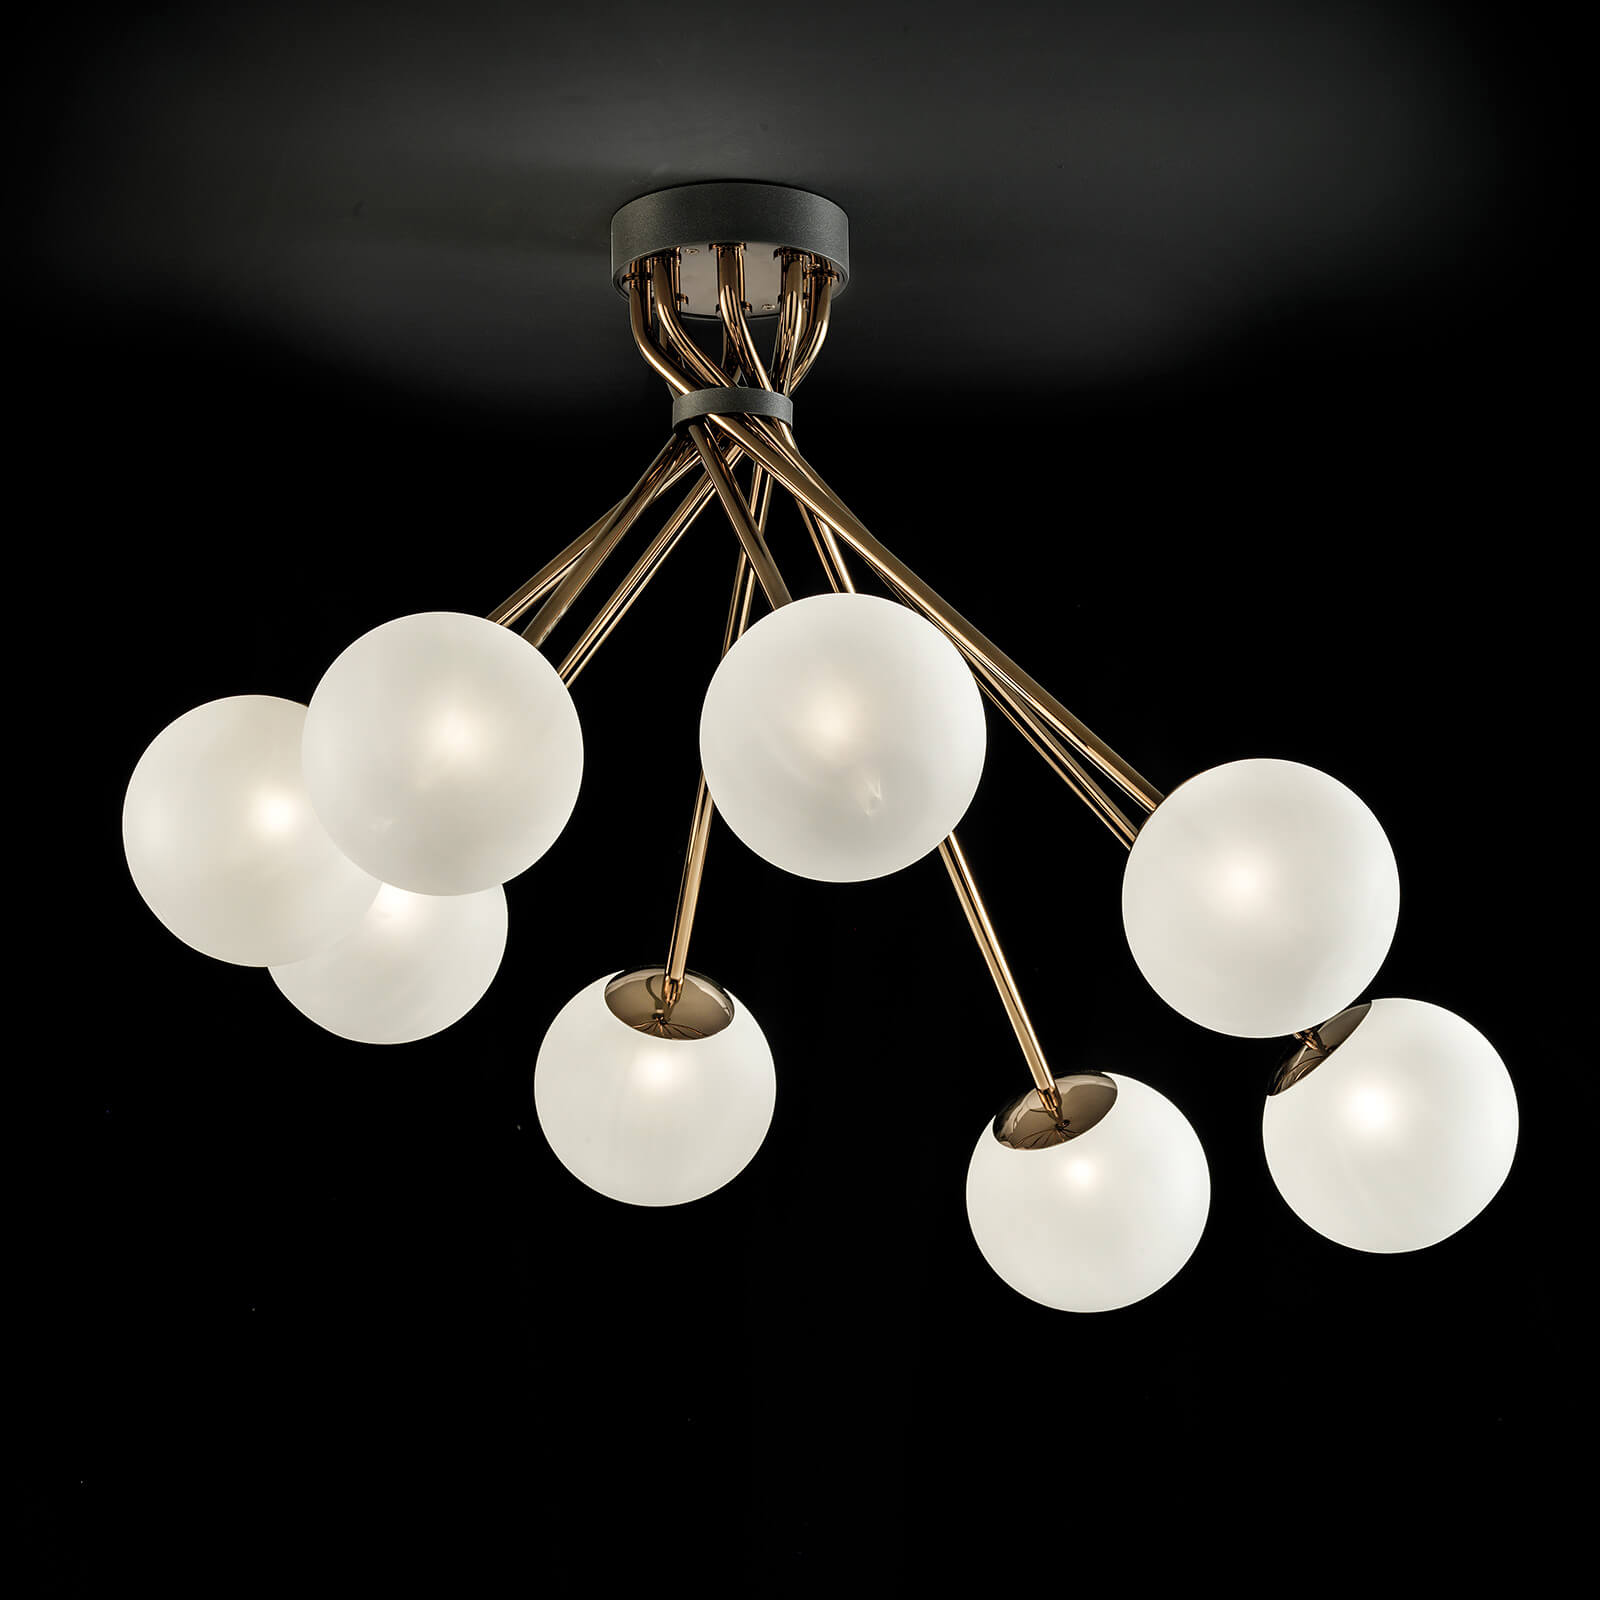 Varavarankely zava-kanto chandelier maha-olona chandelier chandelier tsotraChandelier PC305